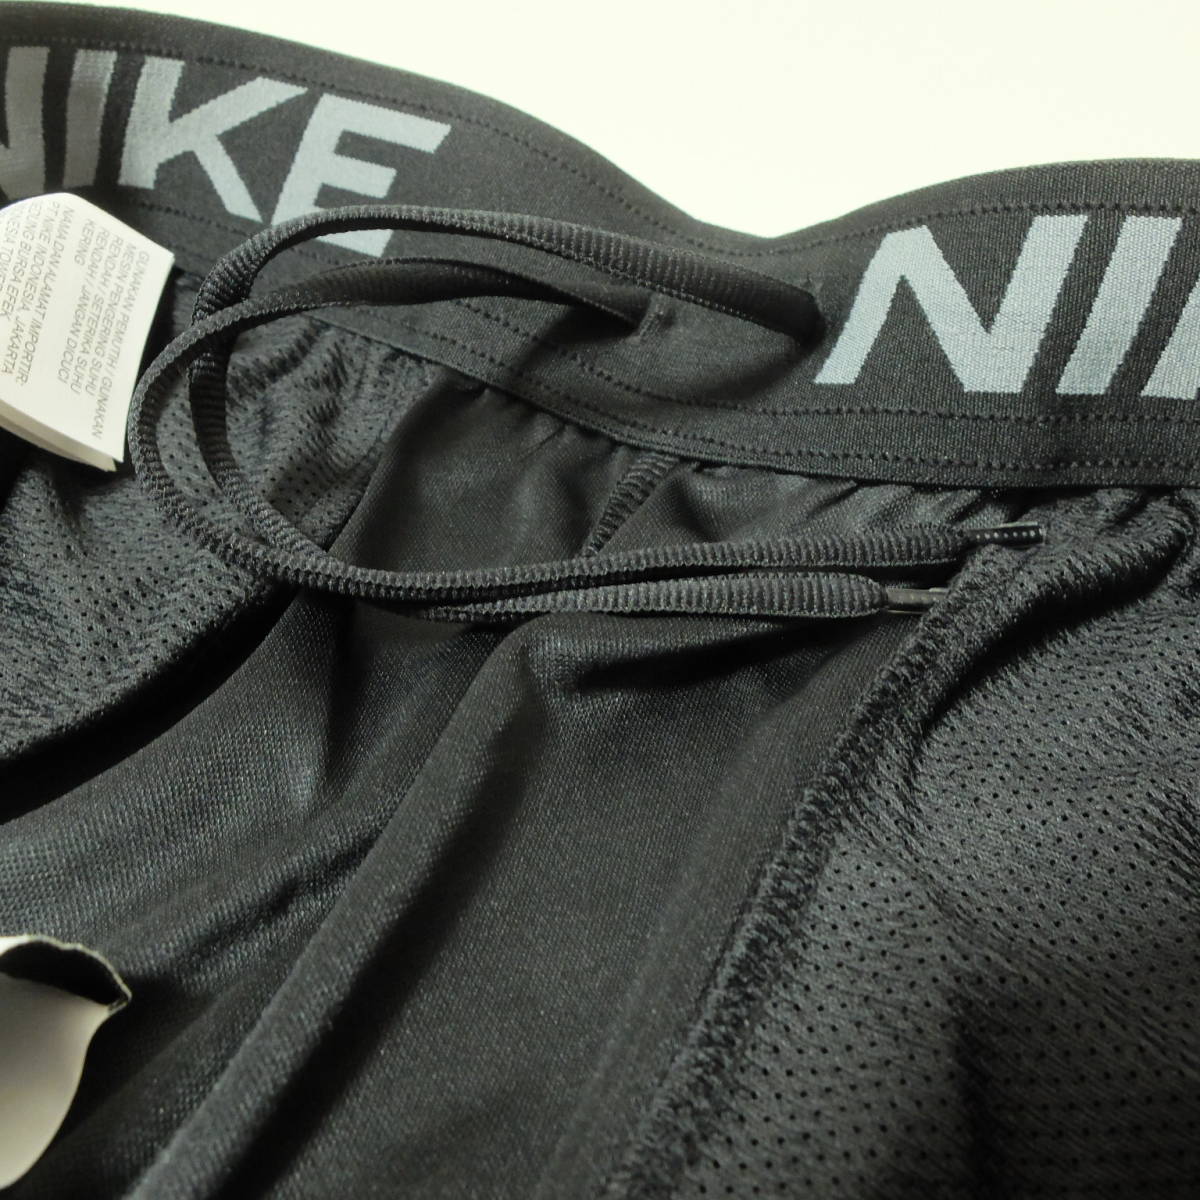 [新品 送料込] メンズL ナイキ Dri-FIT メンズ ニット トレーニングショートパンツ Nike Dri-FIT Men's Knit Training Shorts DD1888